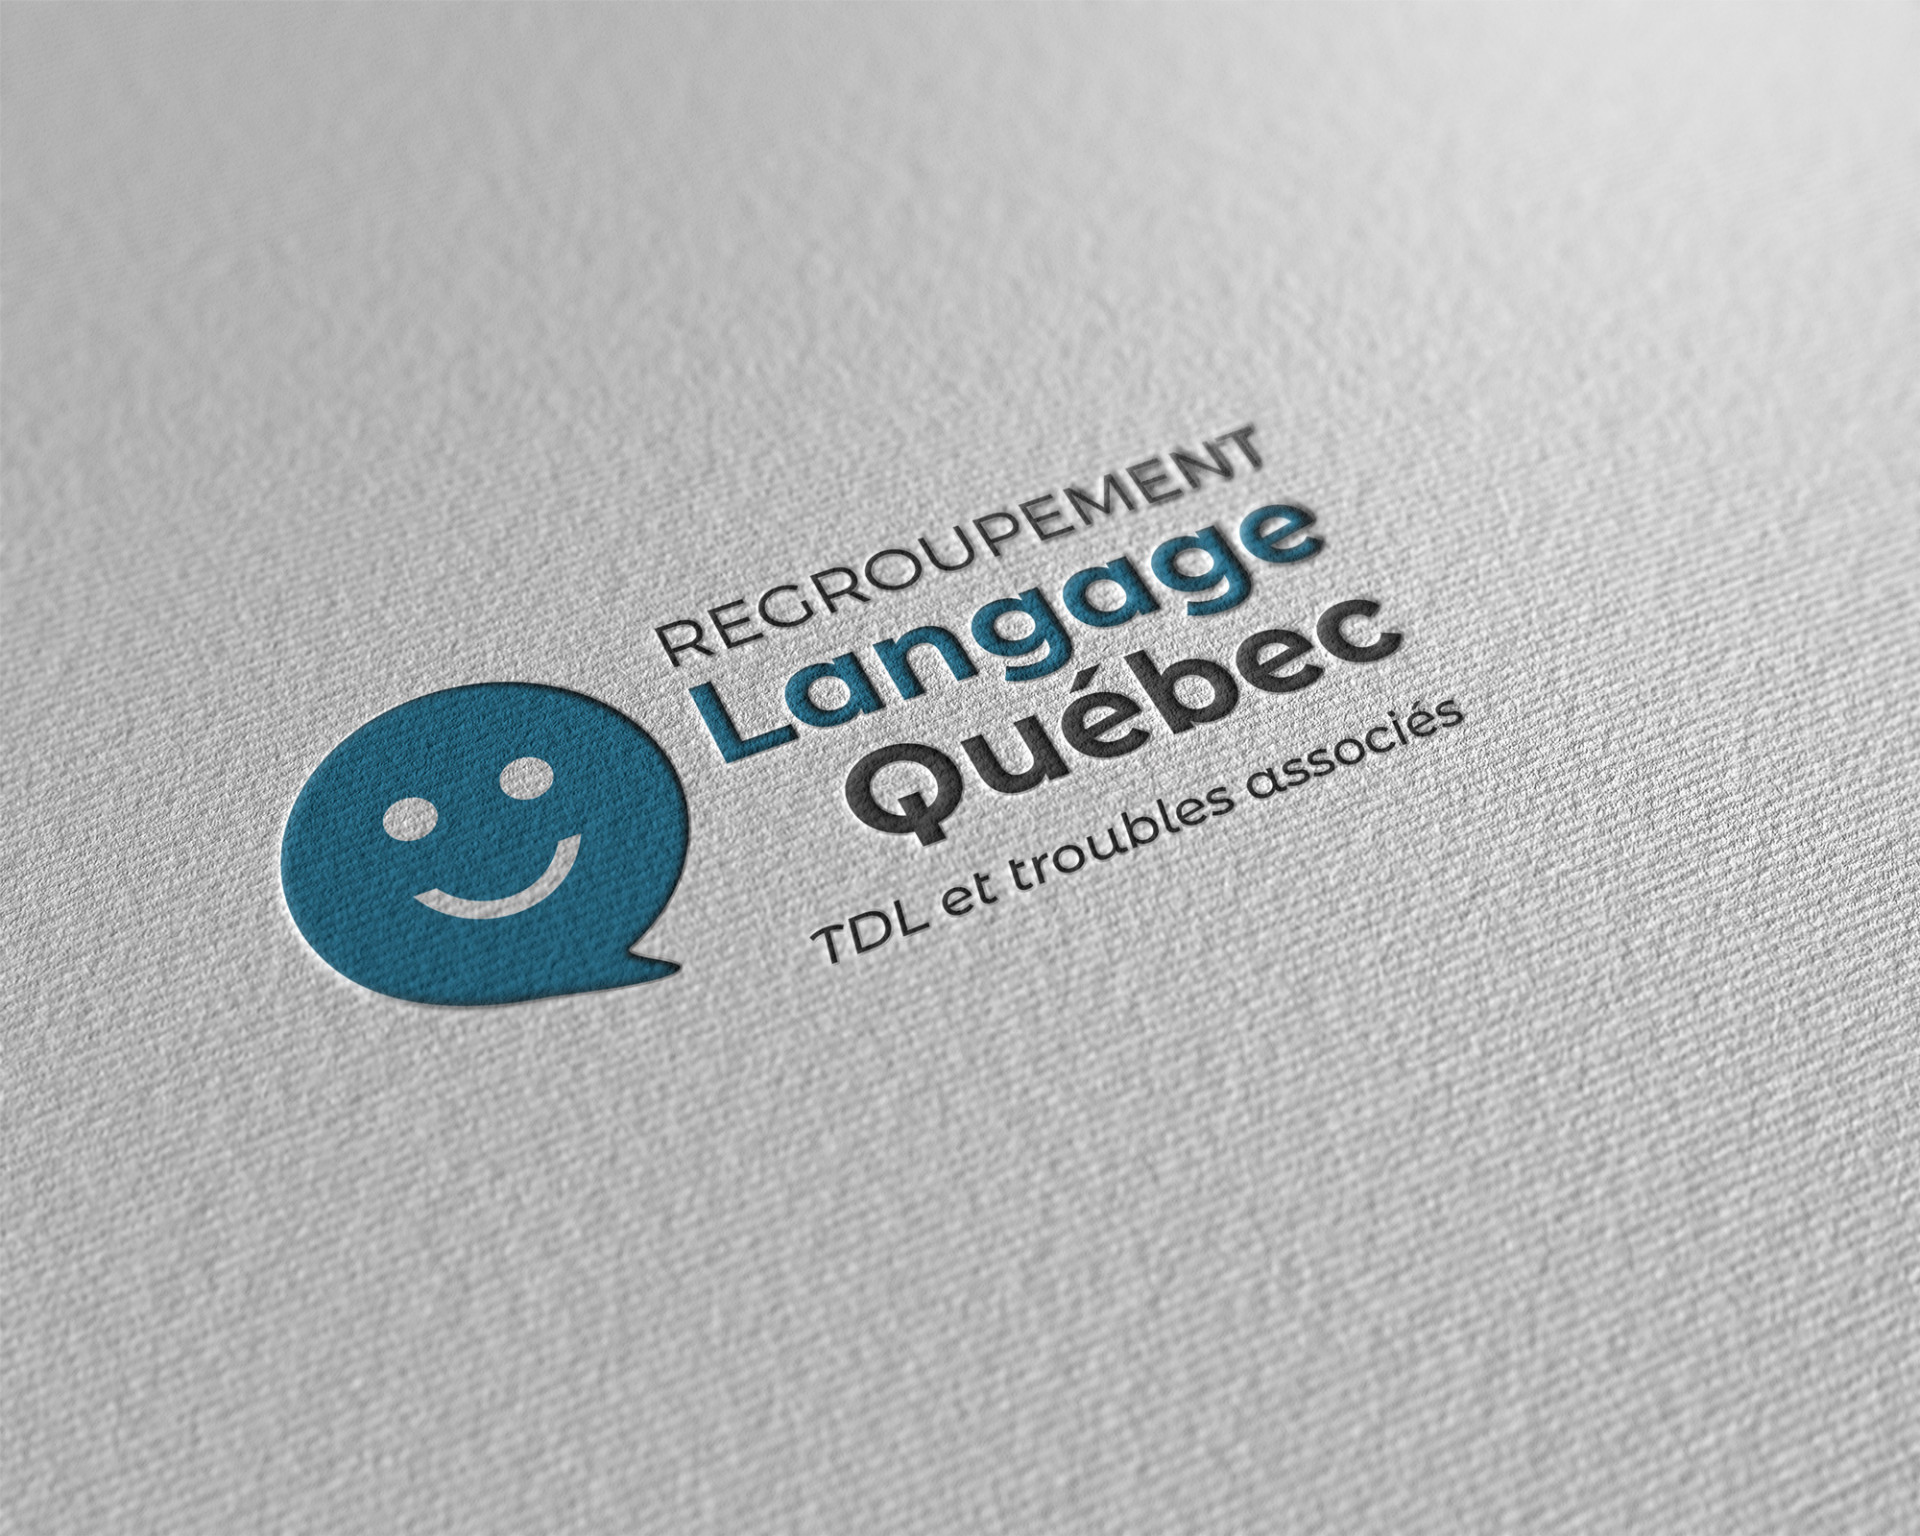 Nouvelle image de marque Regroupement Langage Québec